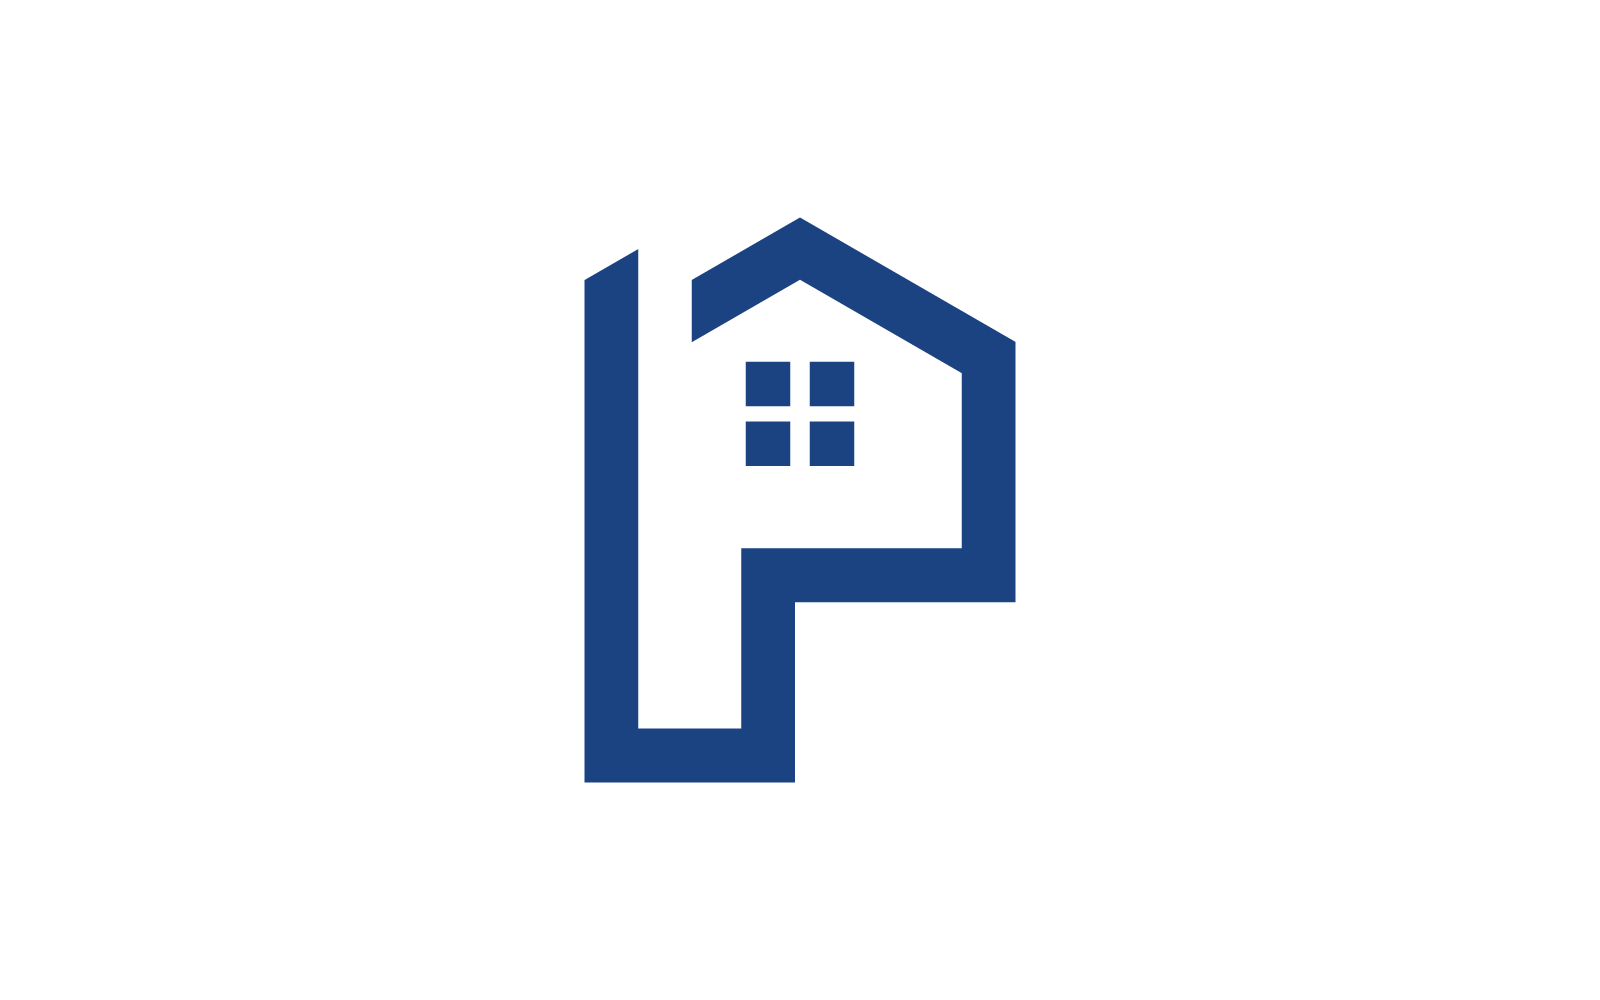 P 首字母家居物业及建筑标志设计